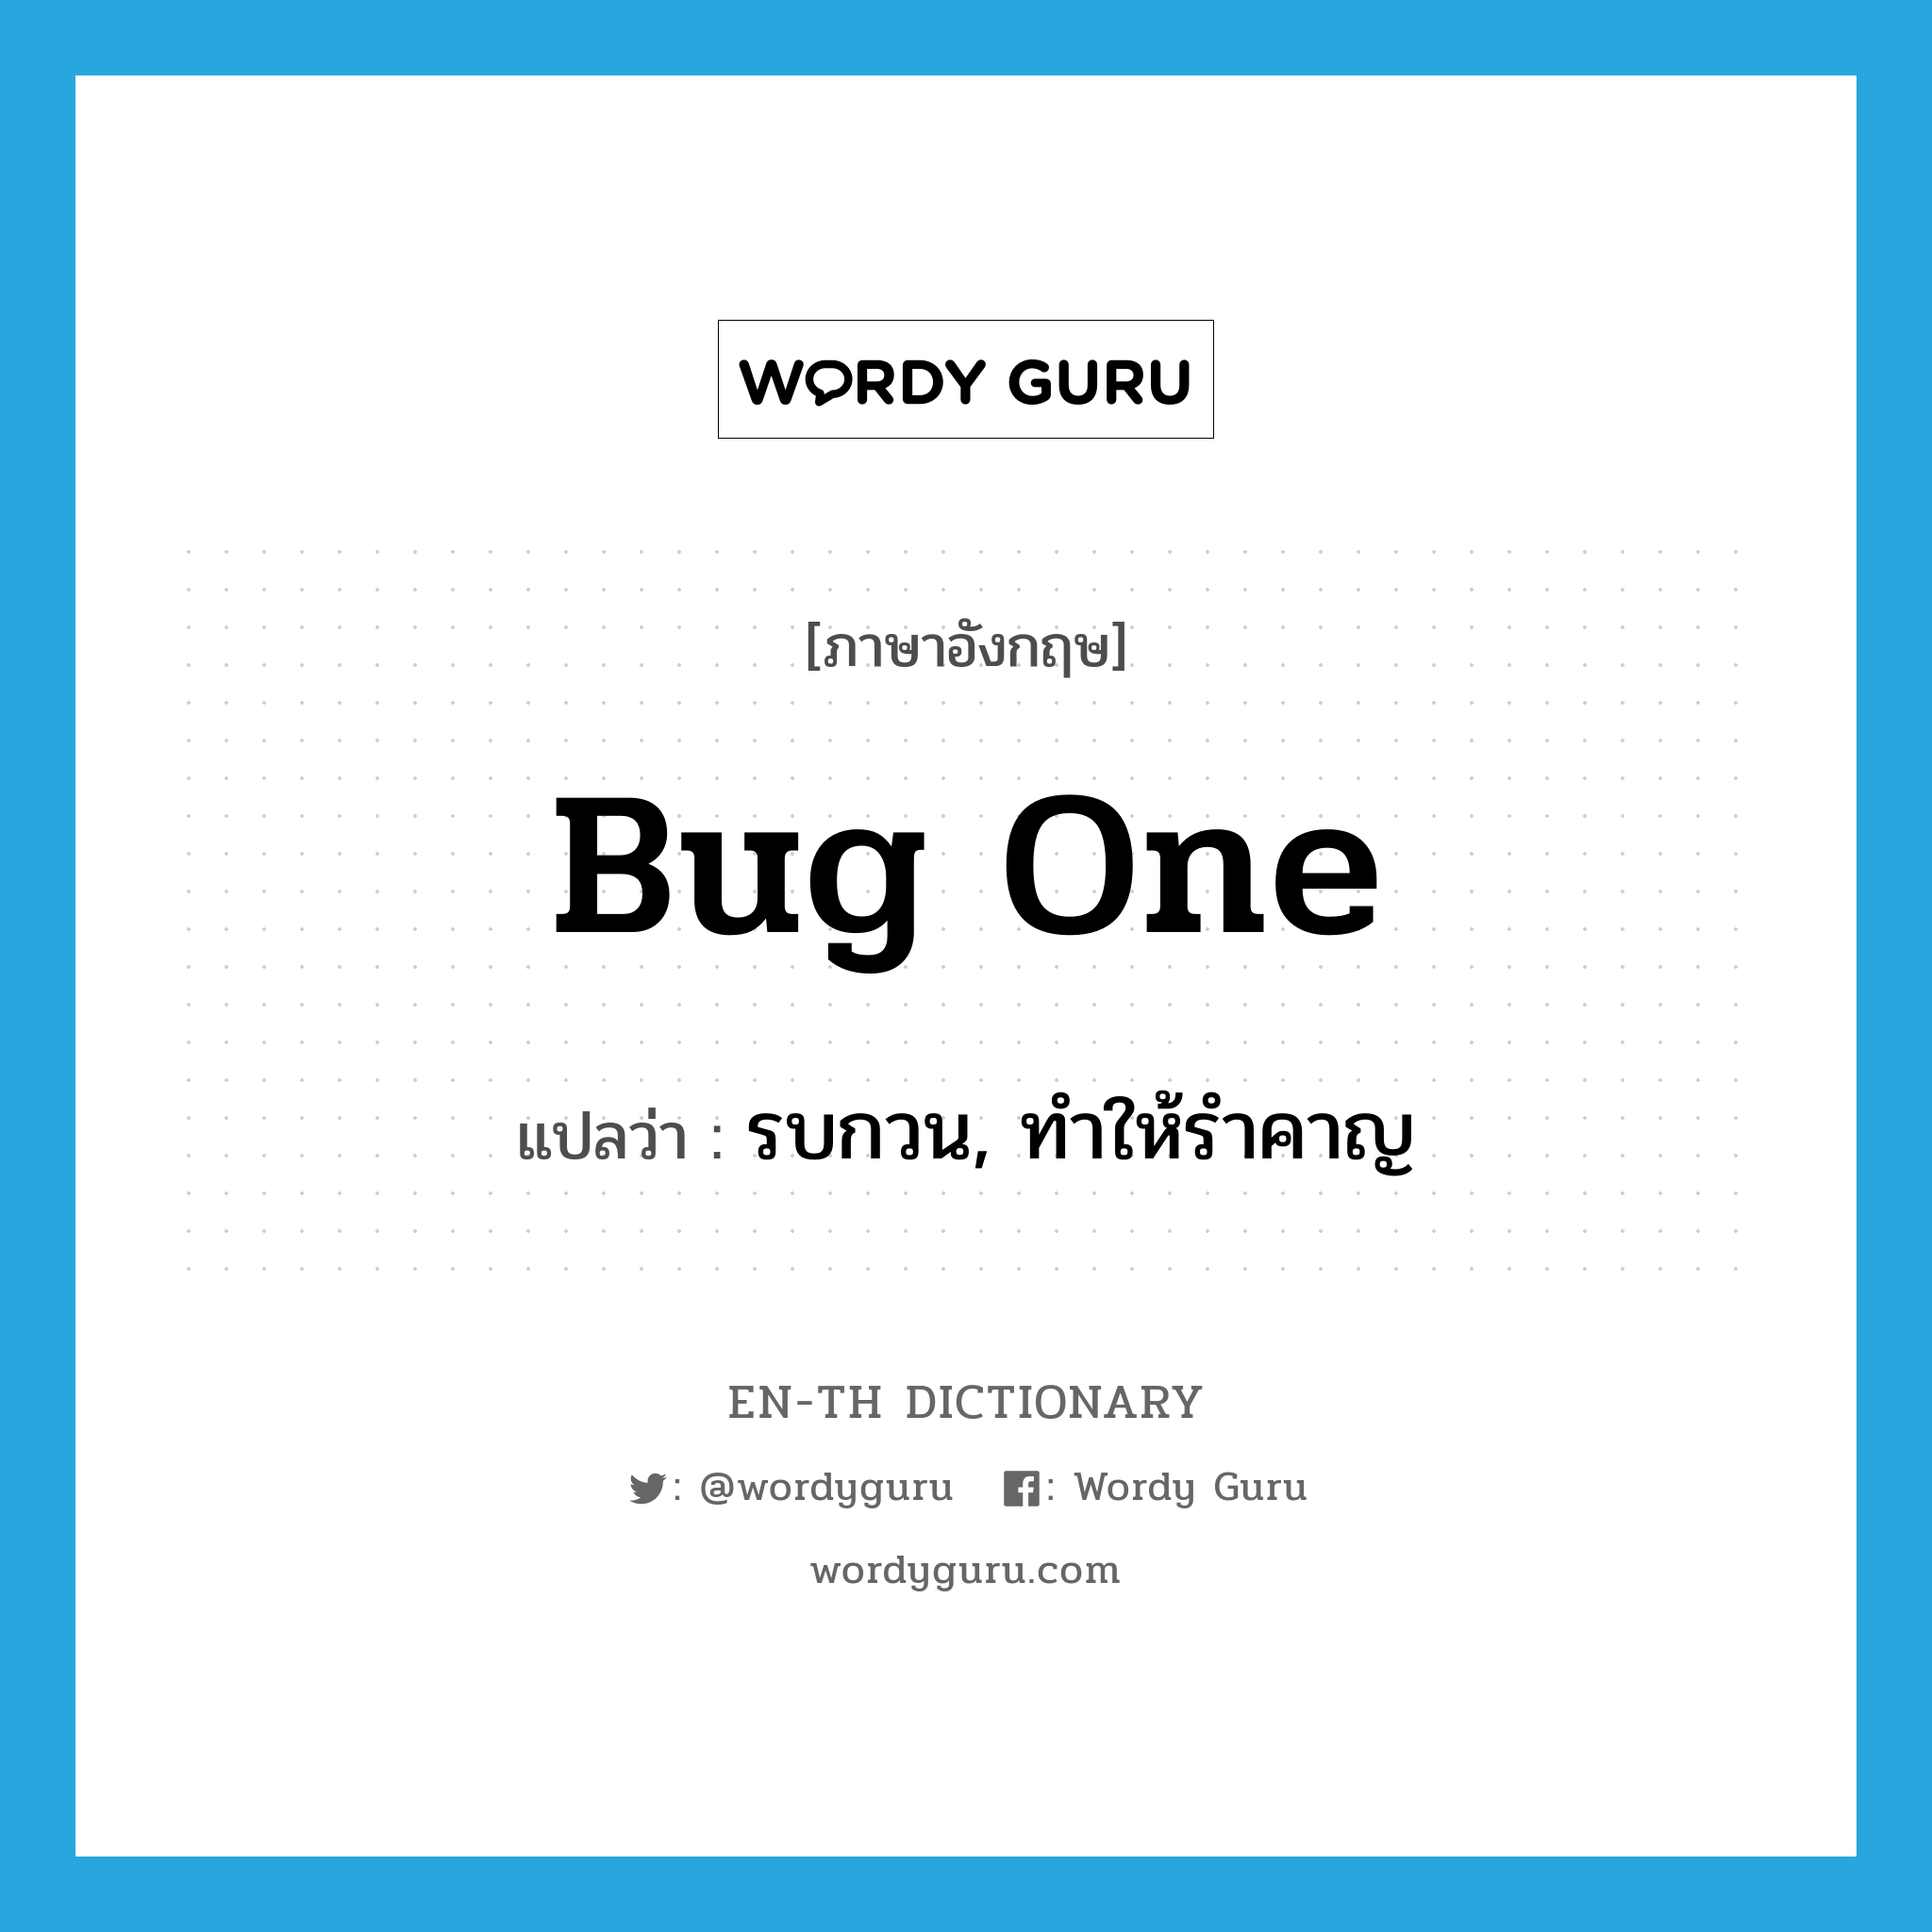 bug one แปลว่า?, คำศัพท์ภาษาอังกฤษ bug one แปลว่า รบกวน, ทำให้รำคาญ ประเภท IDM หมวด IDM